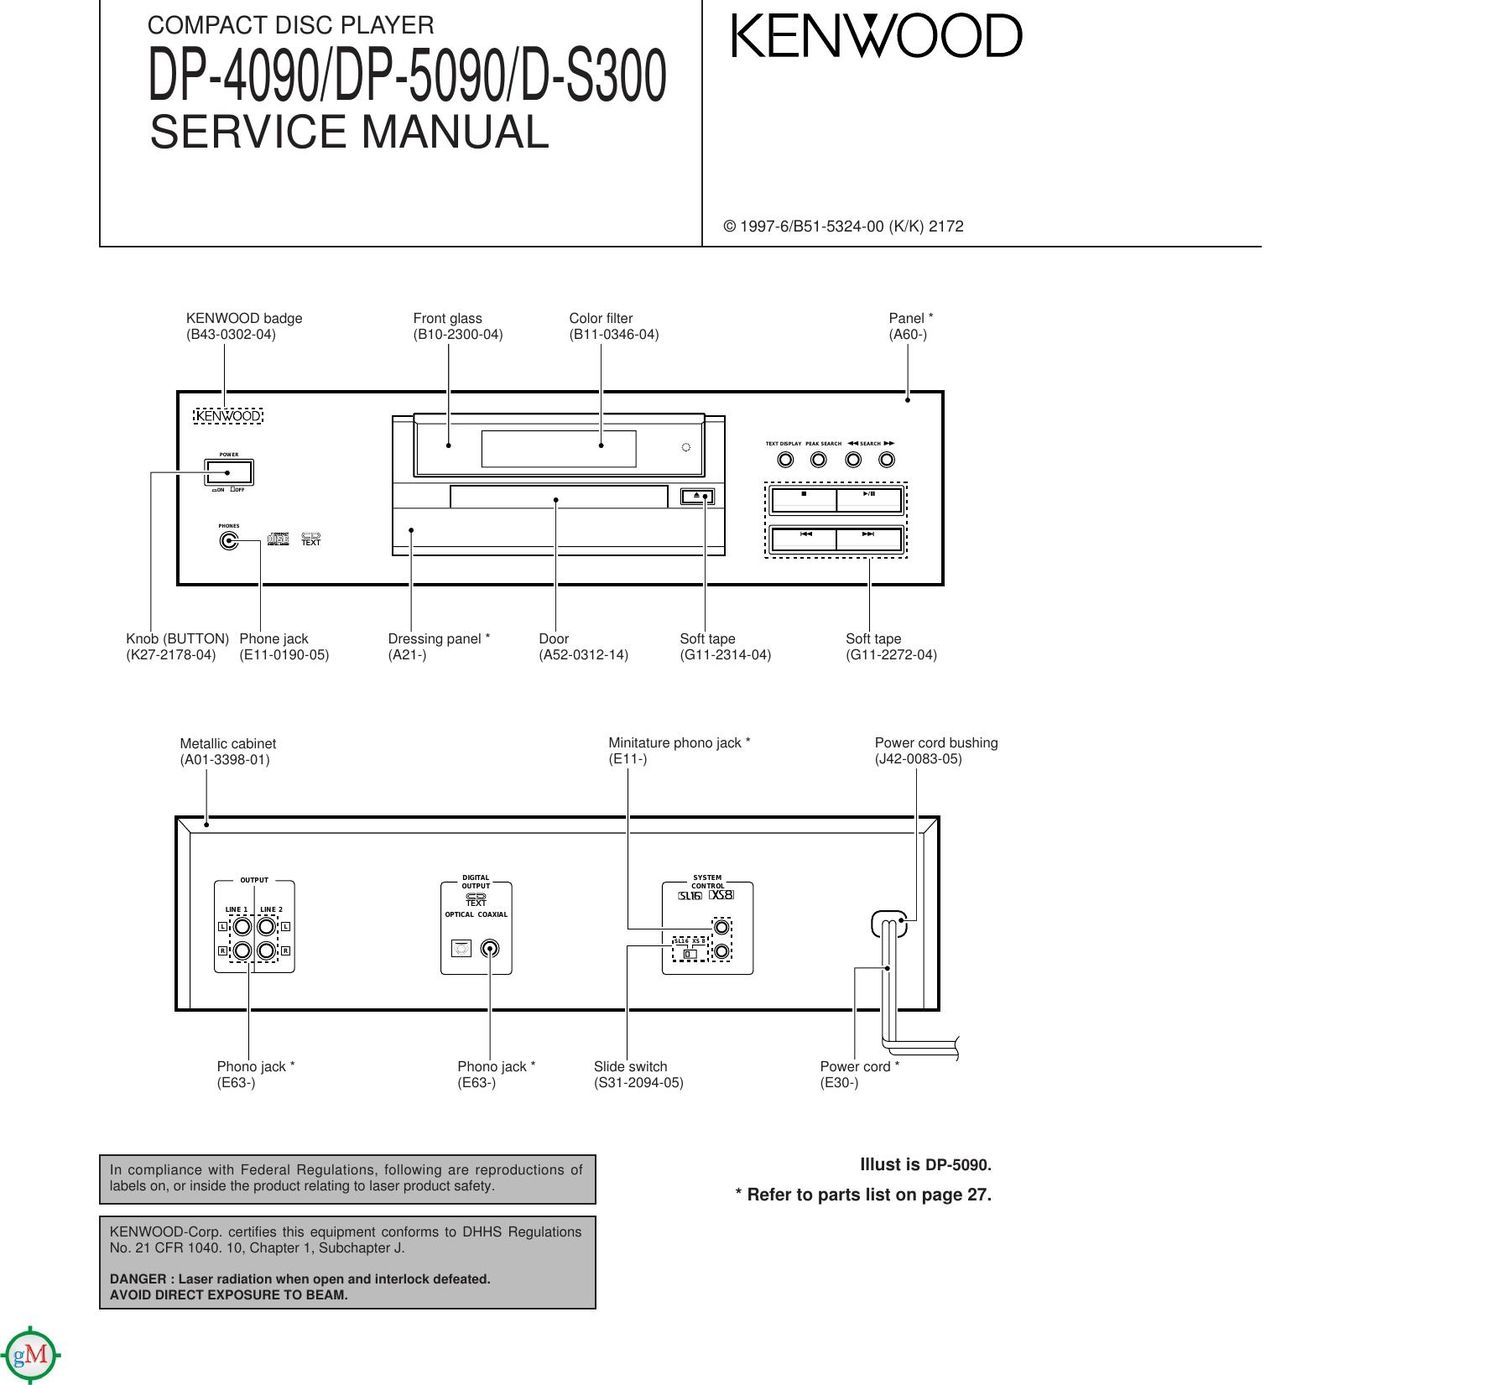 Kenwood DP 5090 Service Manual